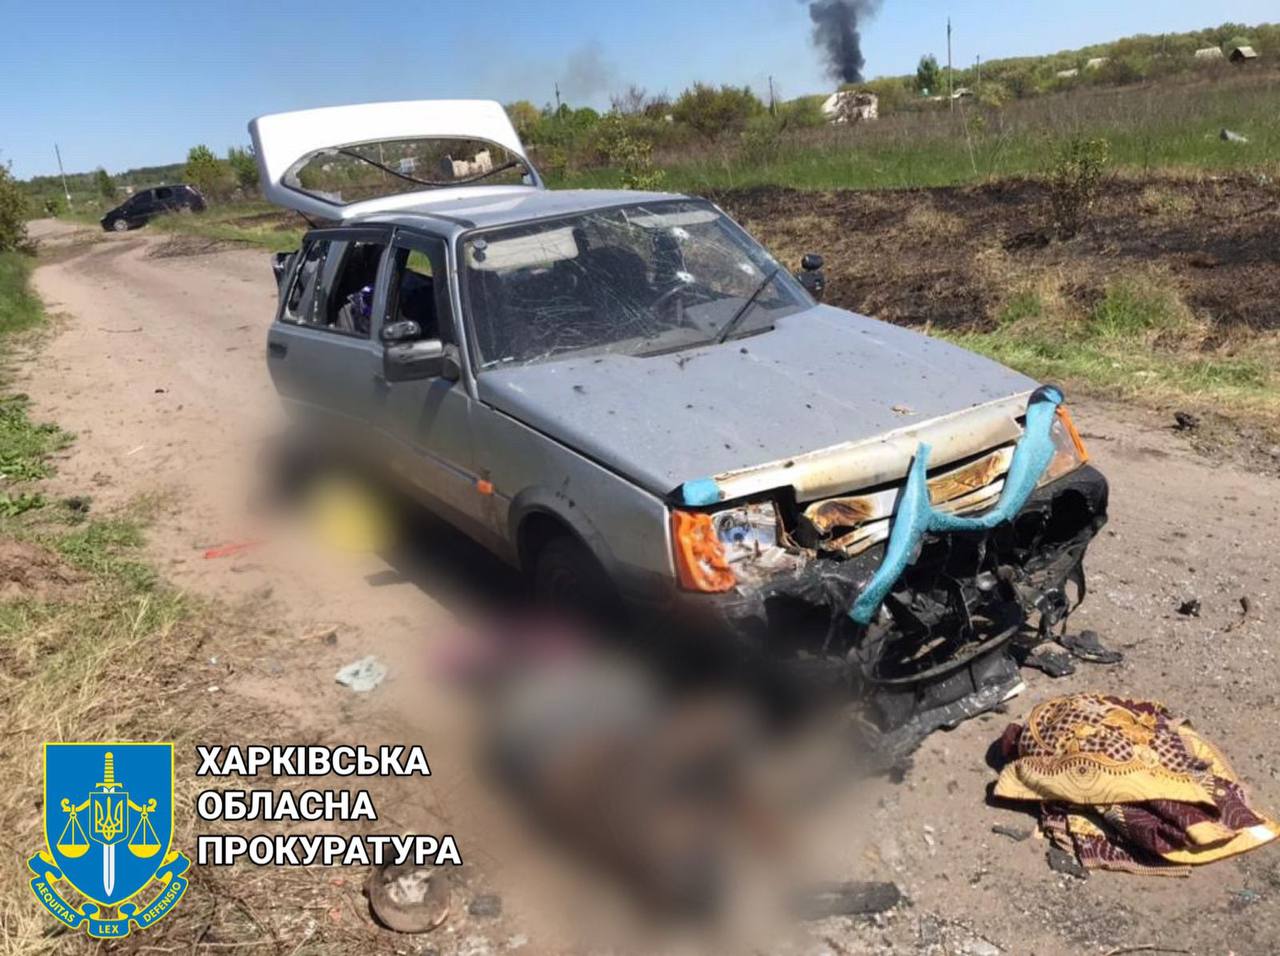 Российские военные обстреляли колонну авто под Старым Салтовом: минимум 4 погибших (фото)